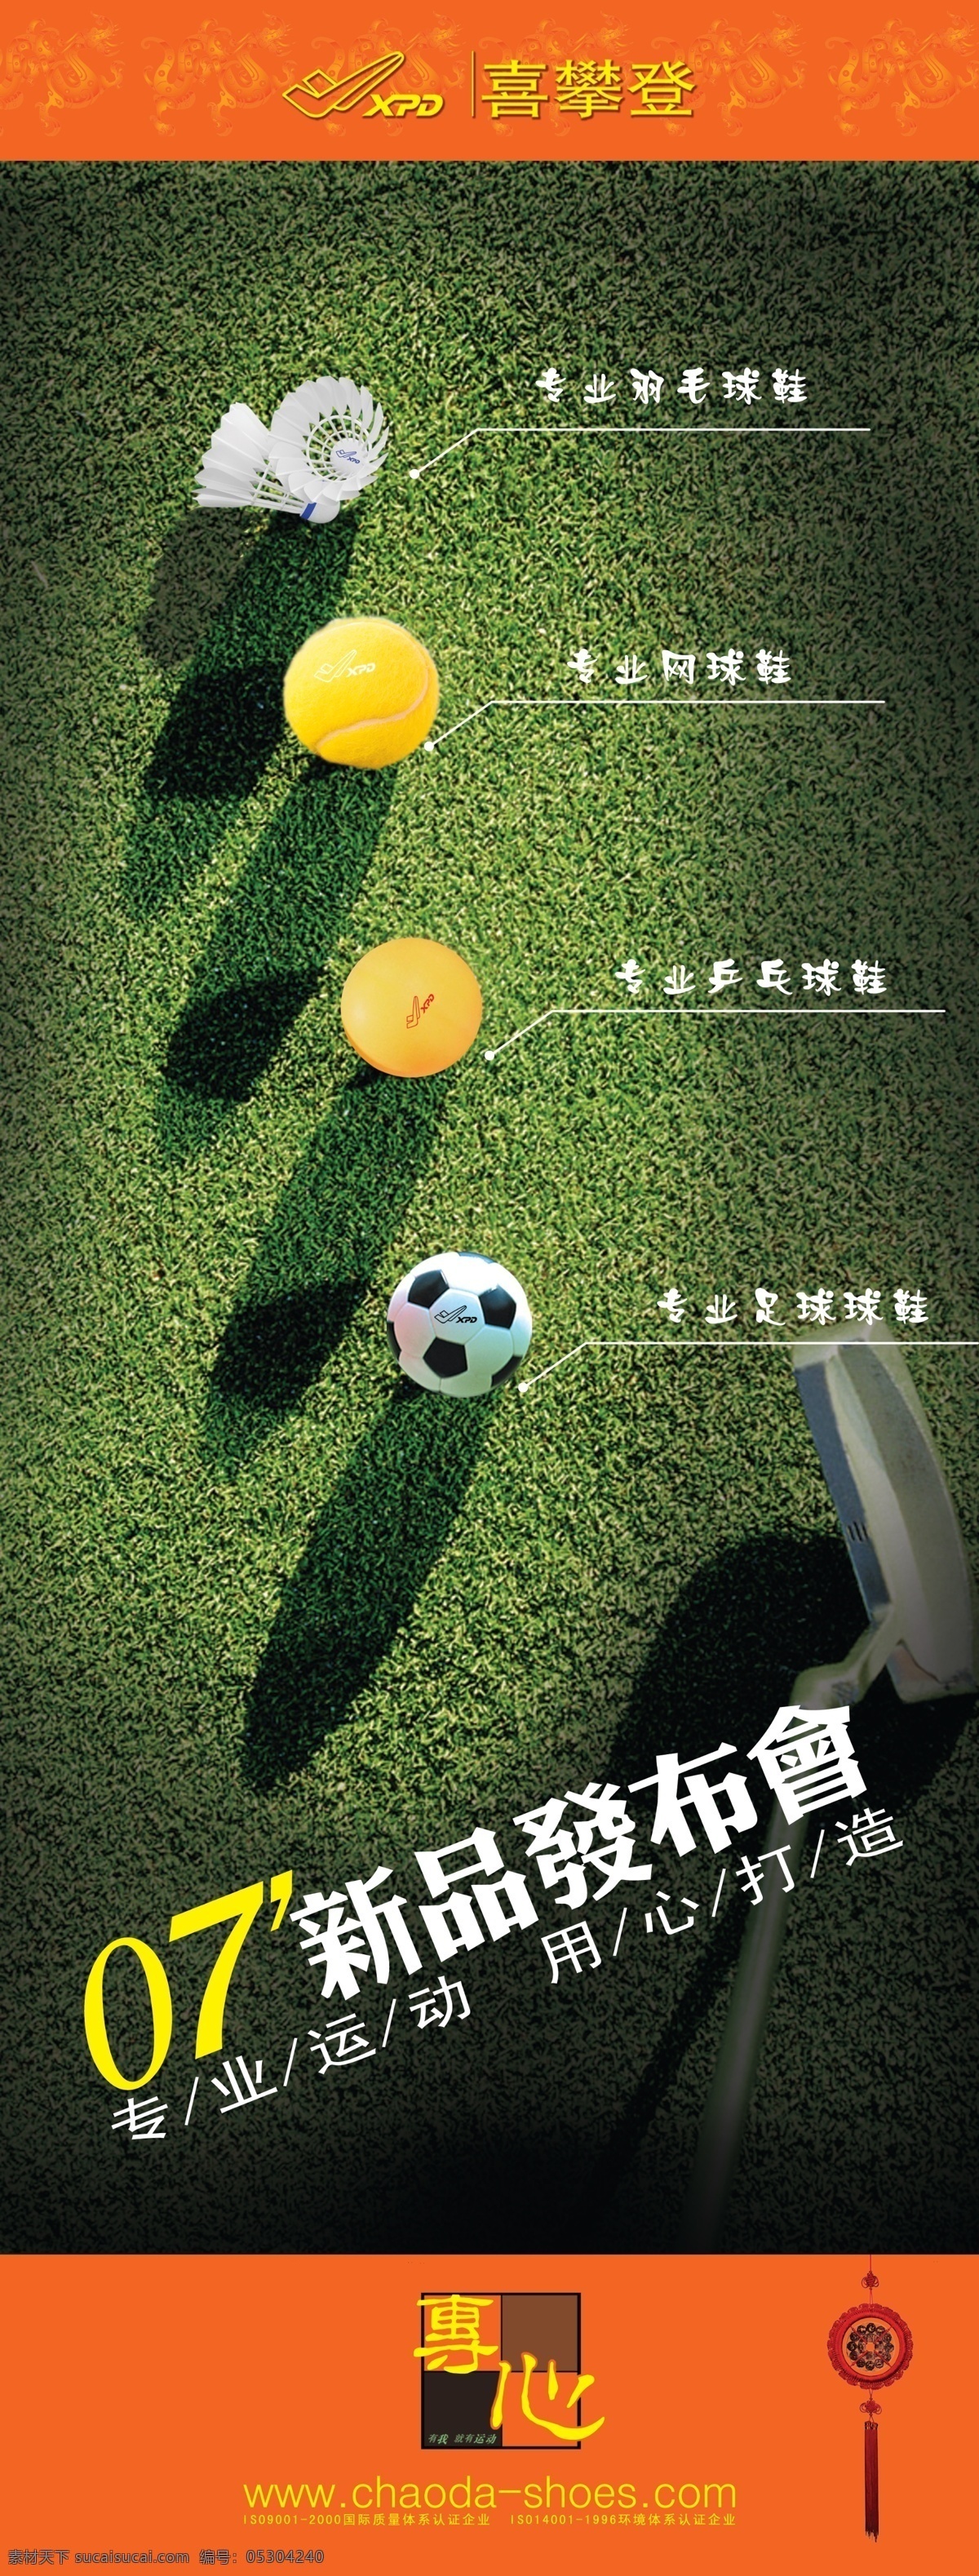 运动 品牌 新品 发布会 海报 psd素材 草地 体育器材 新品发布会 运动品牌 其他海报设计